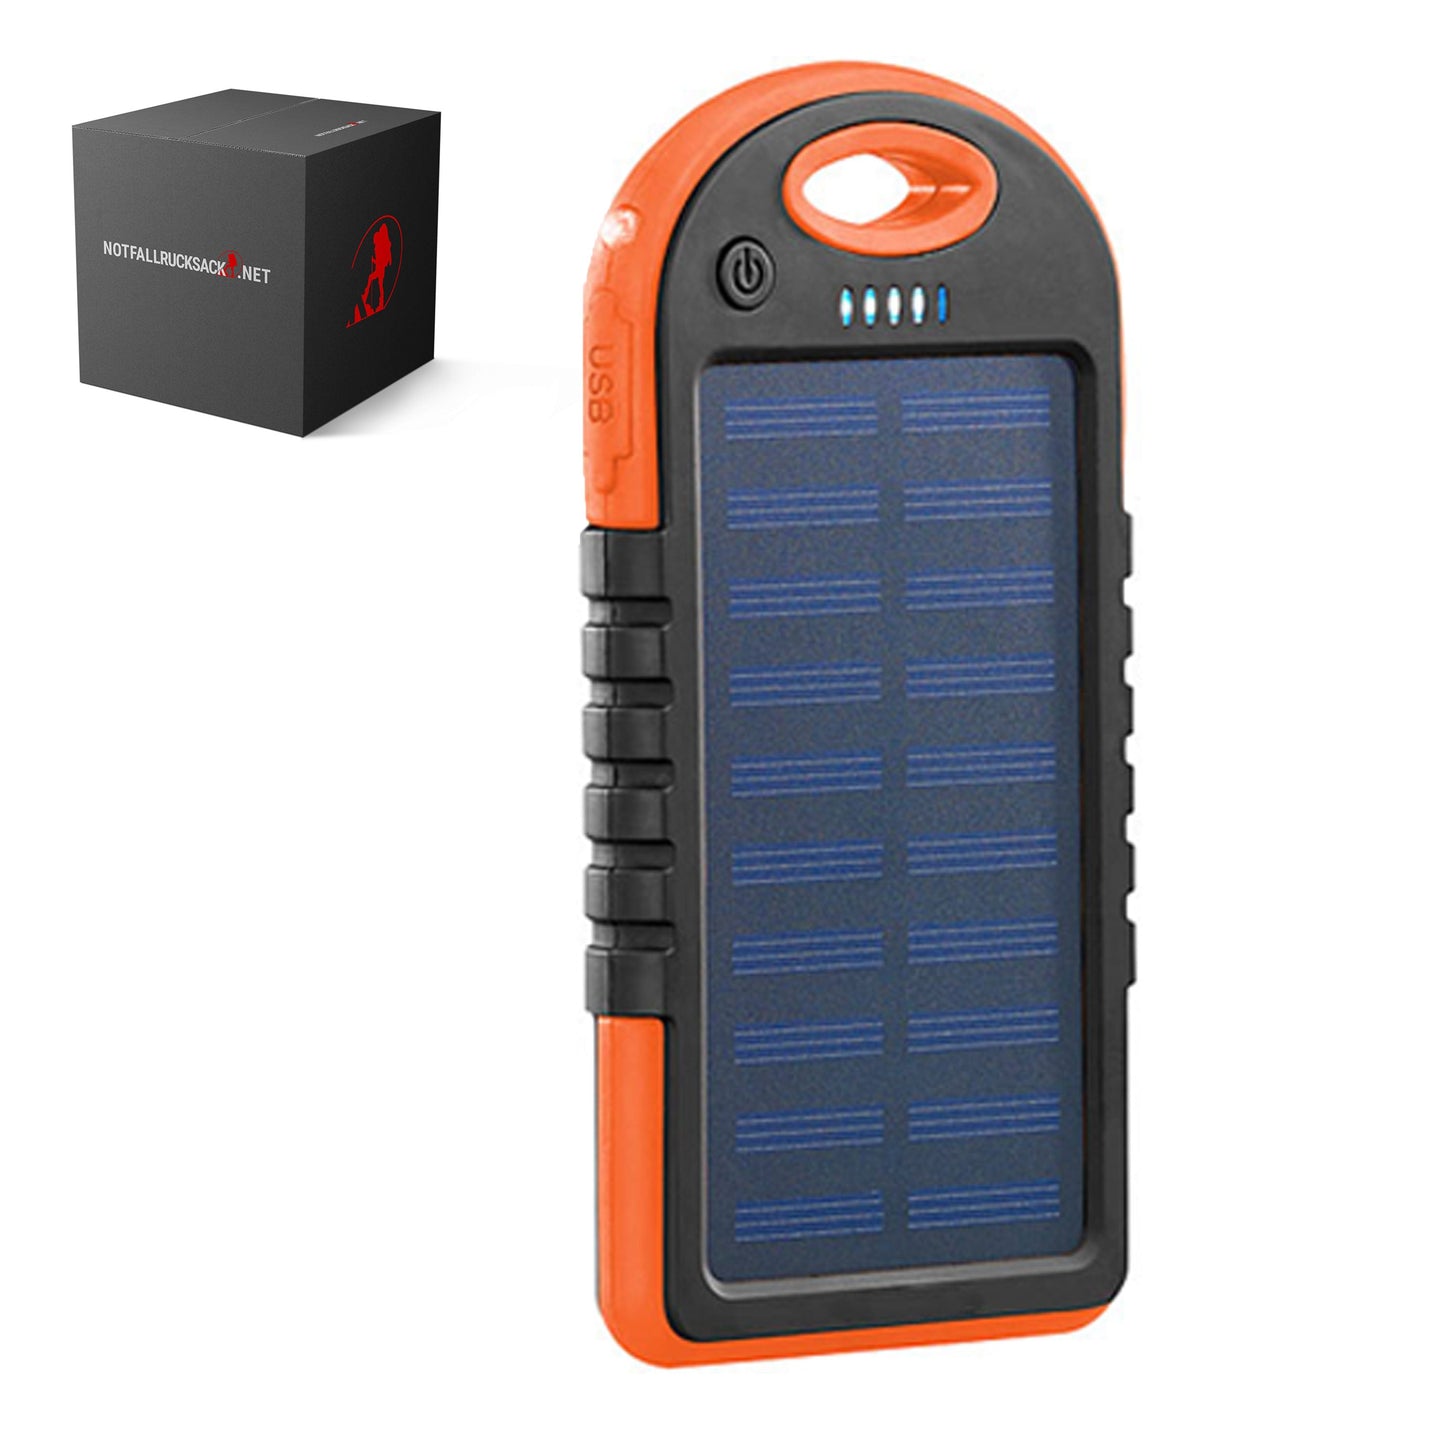 Solar Powerbank Premium (B-Ware) - Überall deine Geräte laden - Testsieger